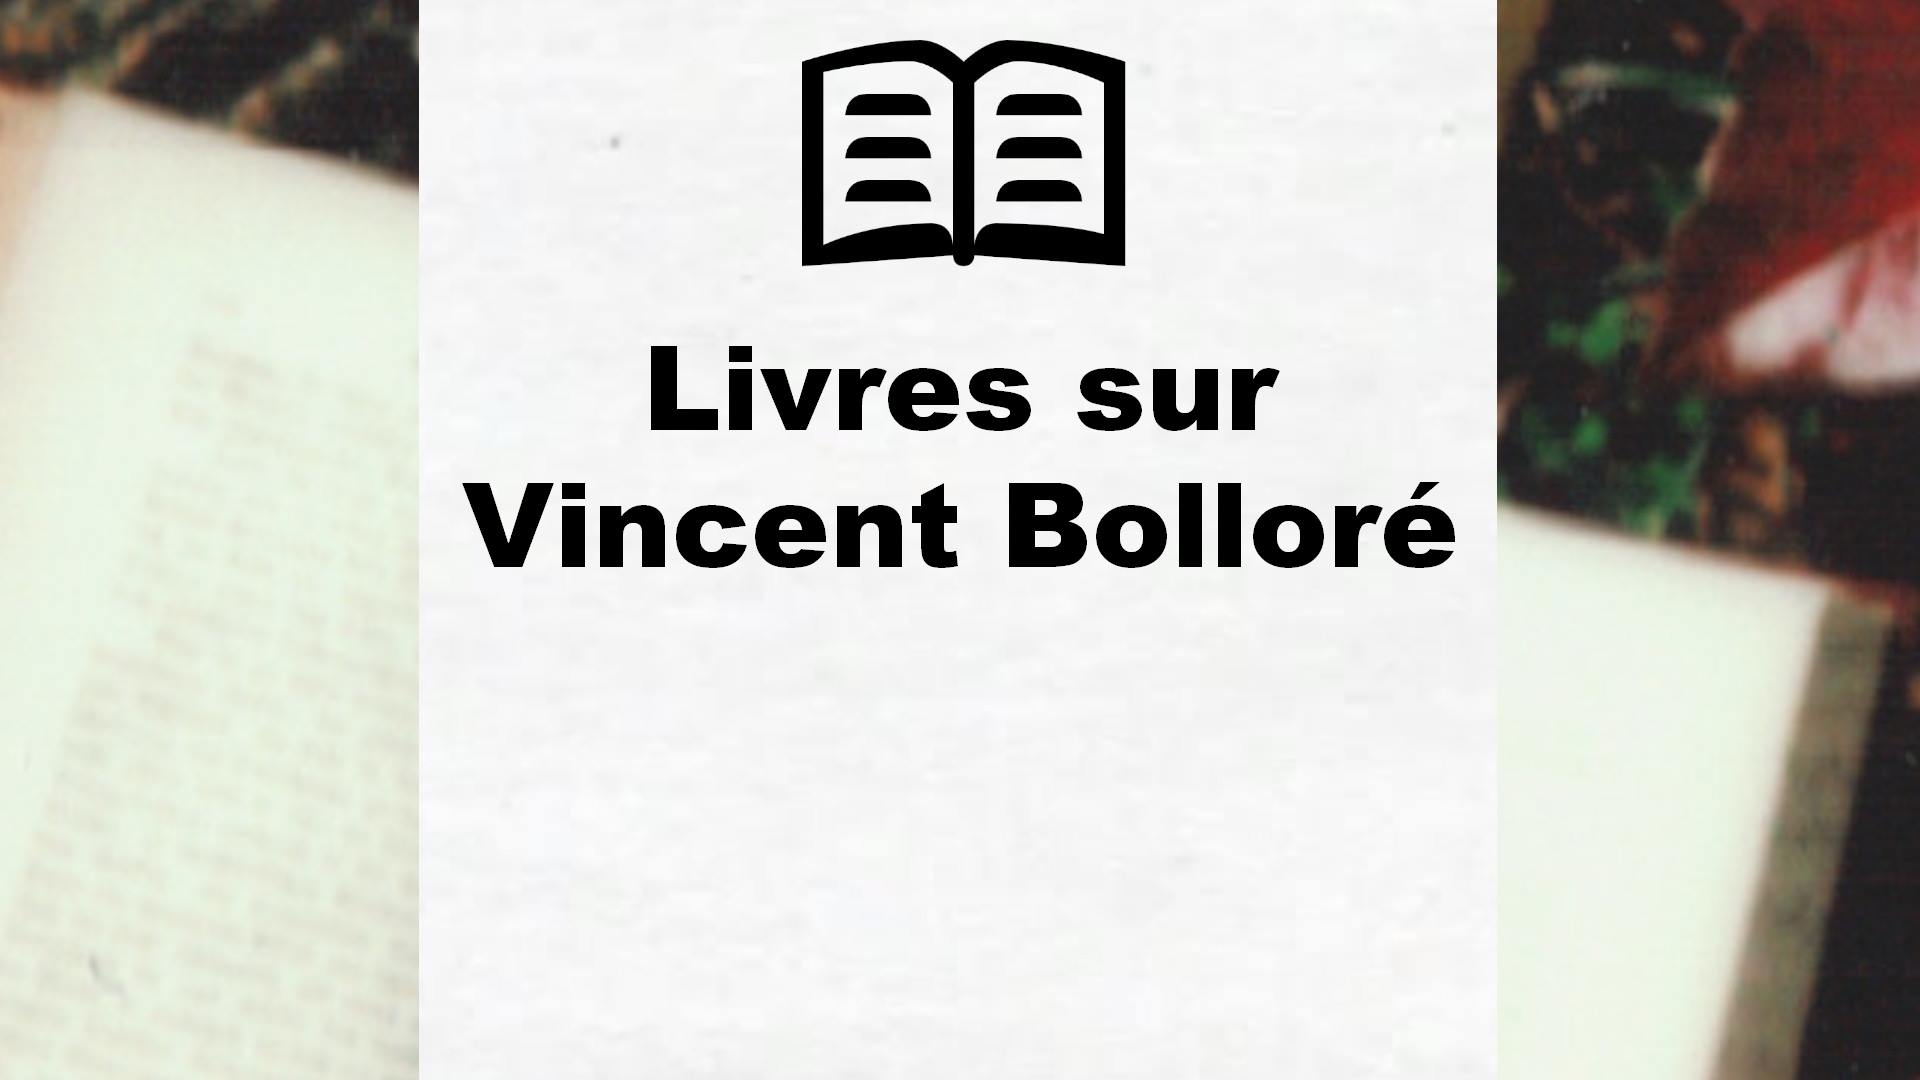 Livres sur Vincent Bolloré